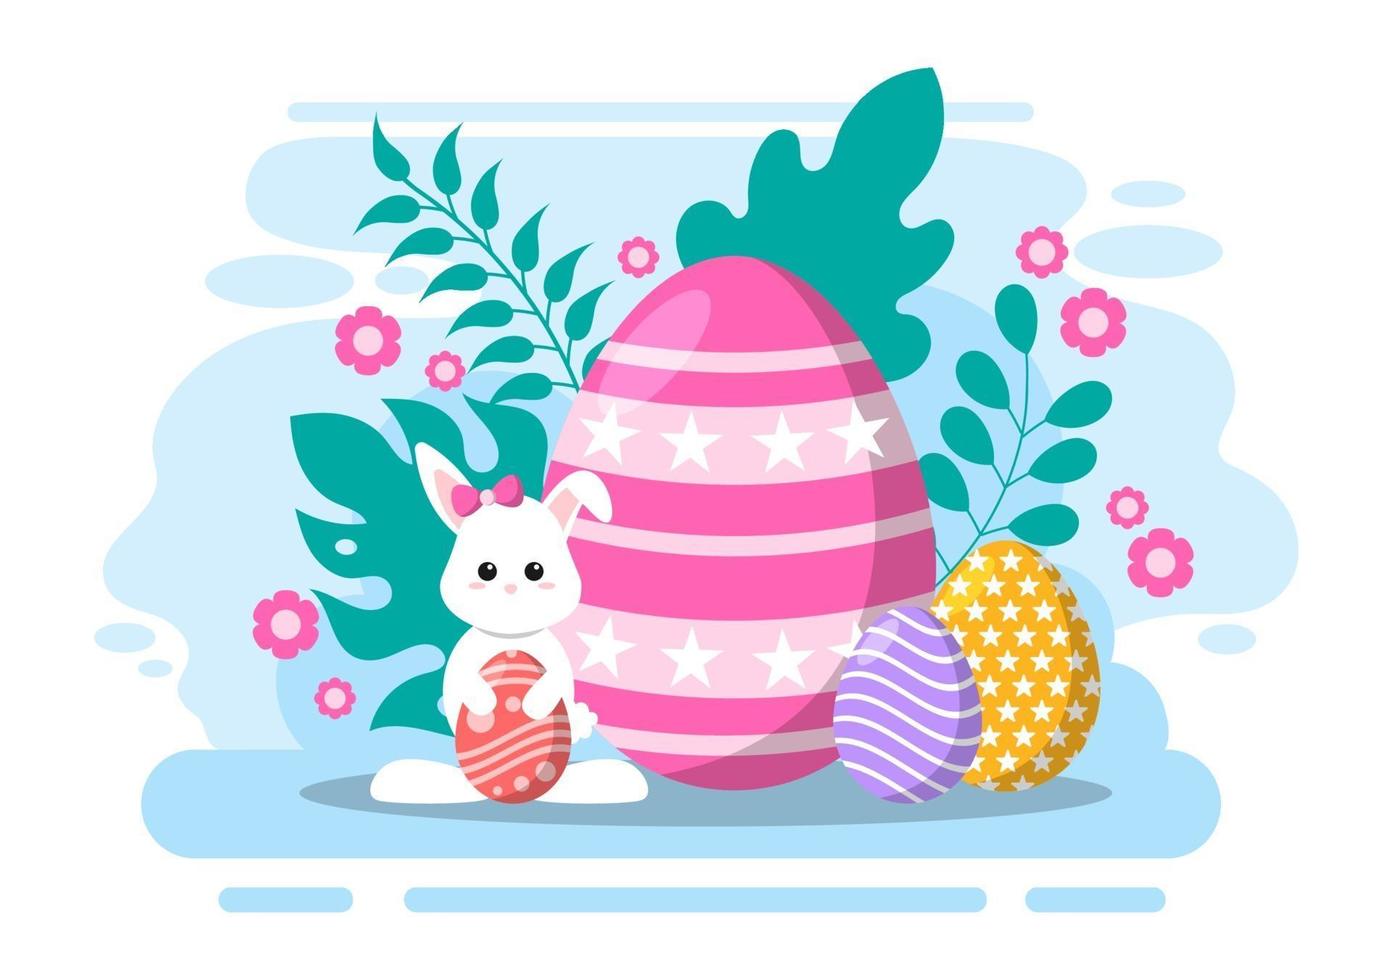 glad påskdag platt design illustration bakgrund för affisch, inbjudan och gratulationskort. kanin och ägg koncept. vektor